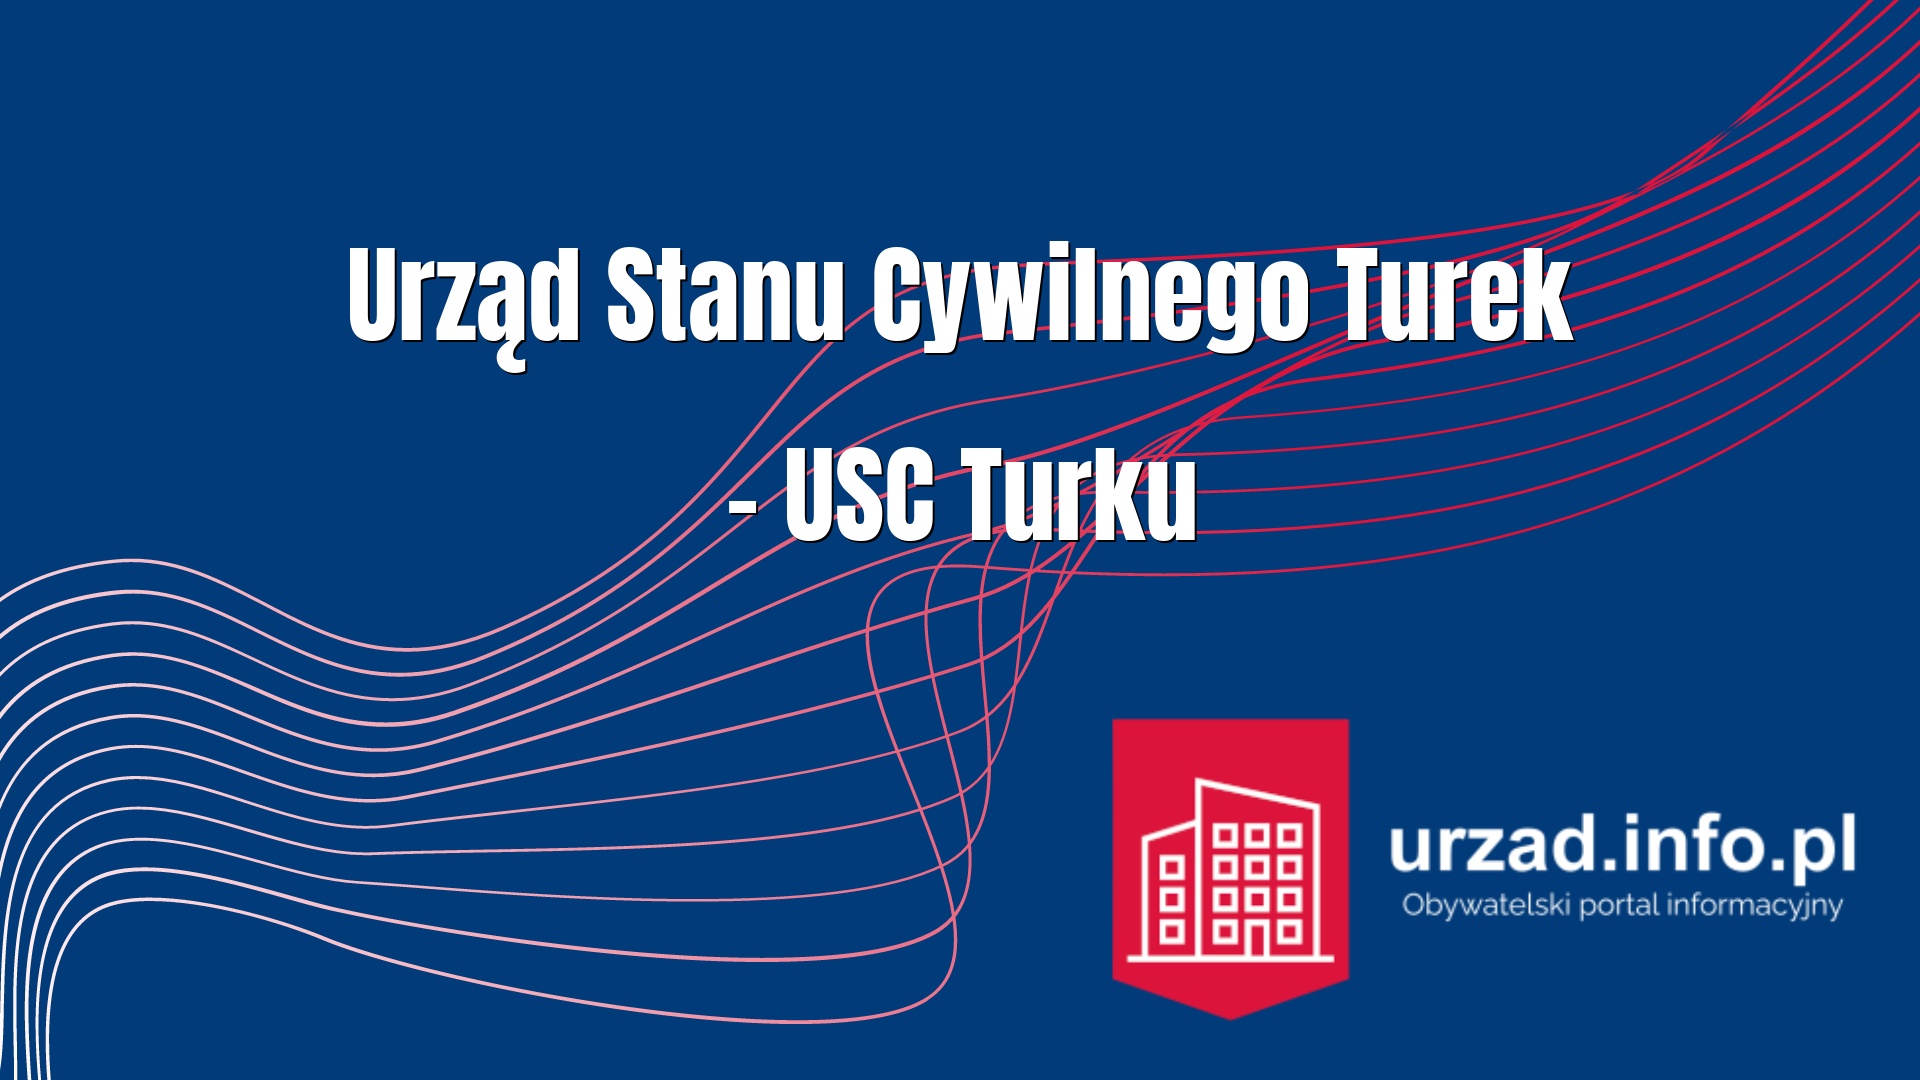 Urząd Stanu Cywilnego Turek – USC Turku